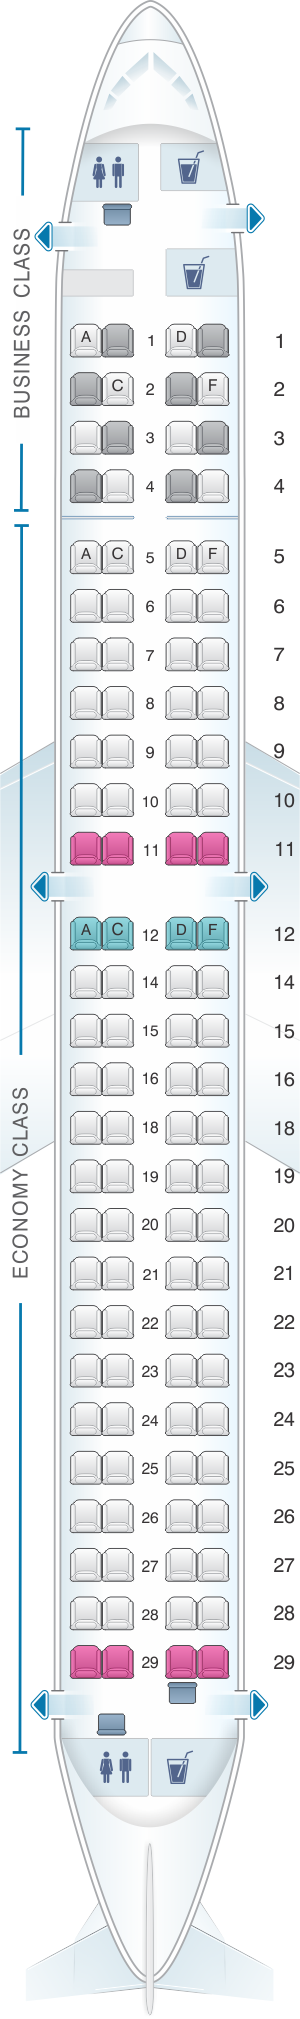 E190 Seating Chart